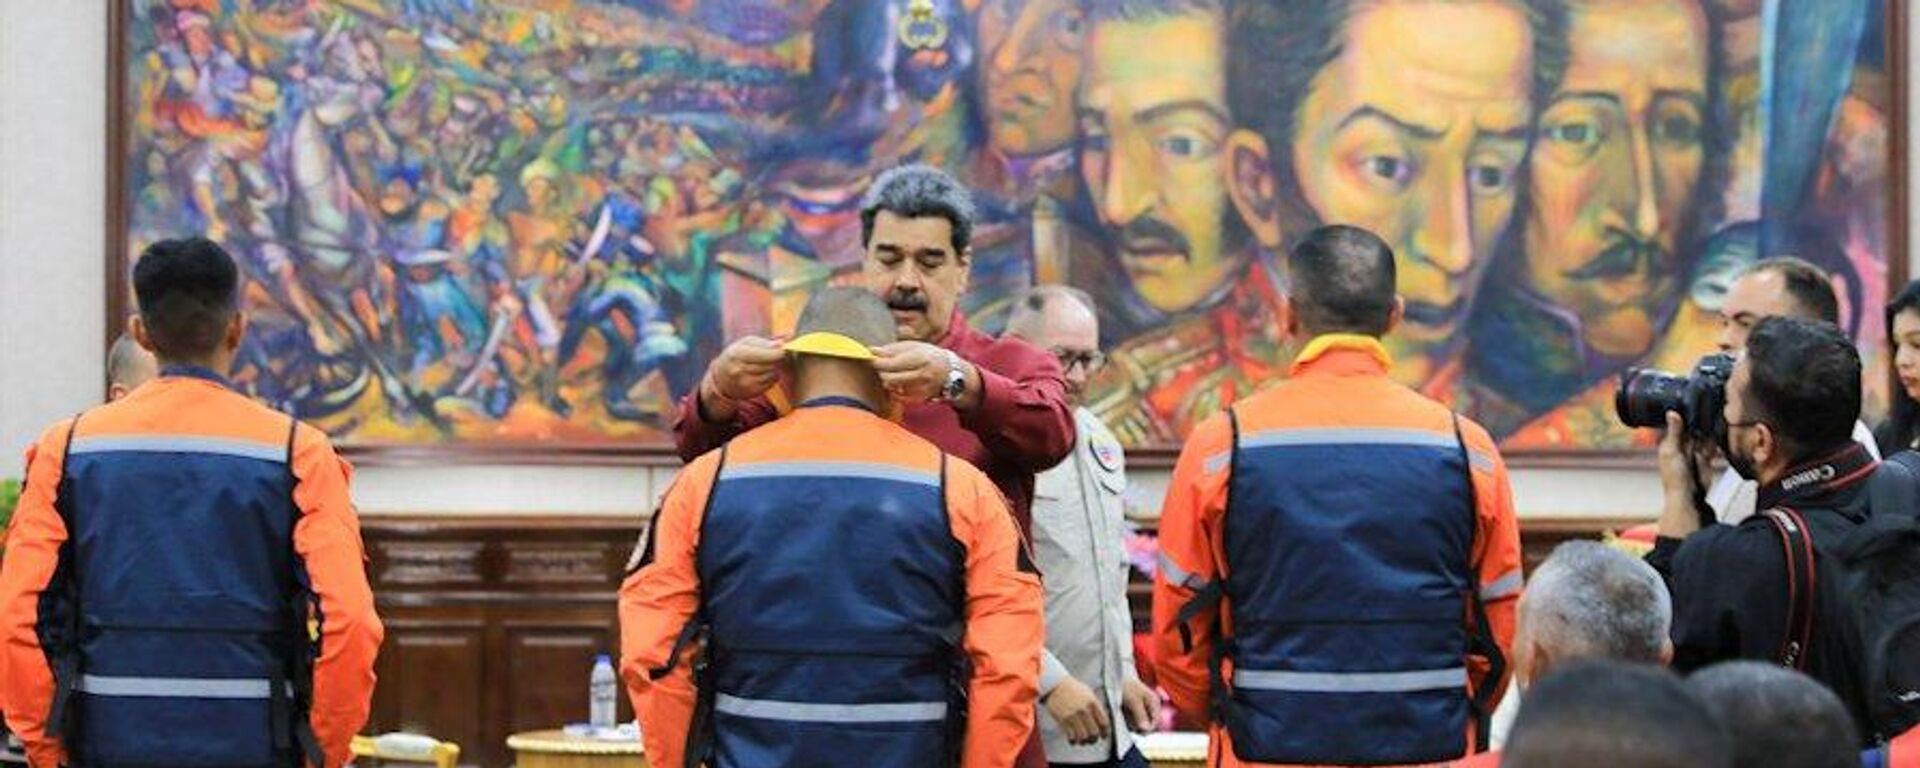 Venezüella Devlet Başkanı Nicolas Maduro, Kahramanmaraş merkezli depremlerin ardından Türkiye'de arama kurtarma çalışmalarına katılan Venezüellalı ekip üyelerine Francisco de Miranda nişanı takdim etti. - Sputnik Türkiye, 1920, 25.02.2023